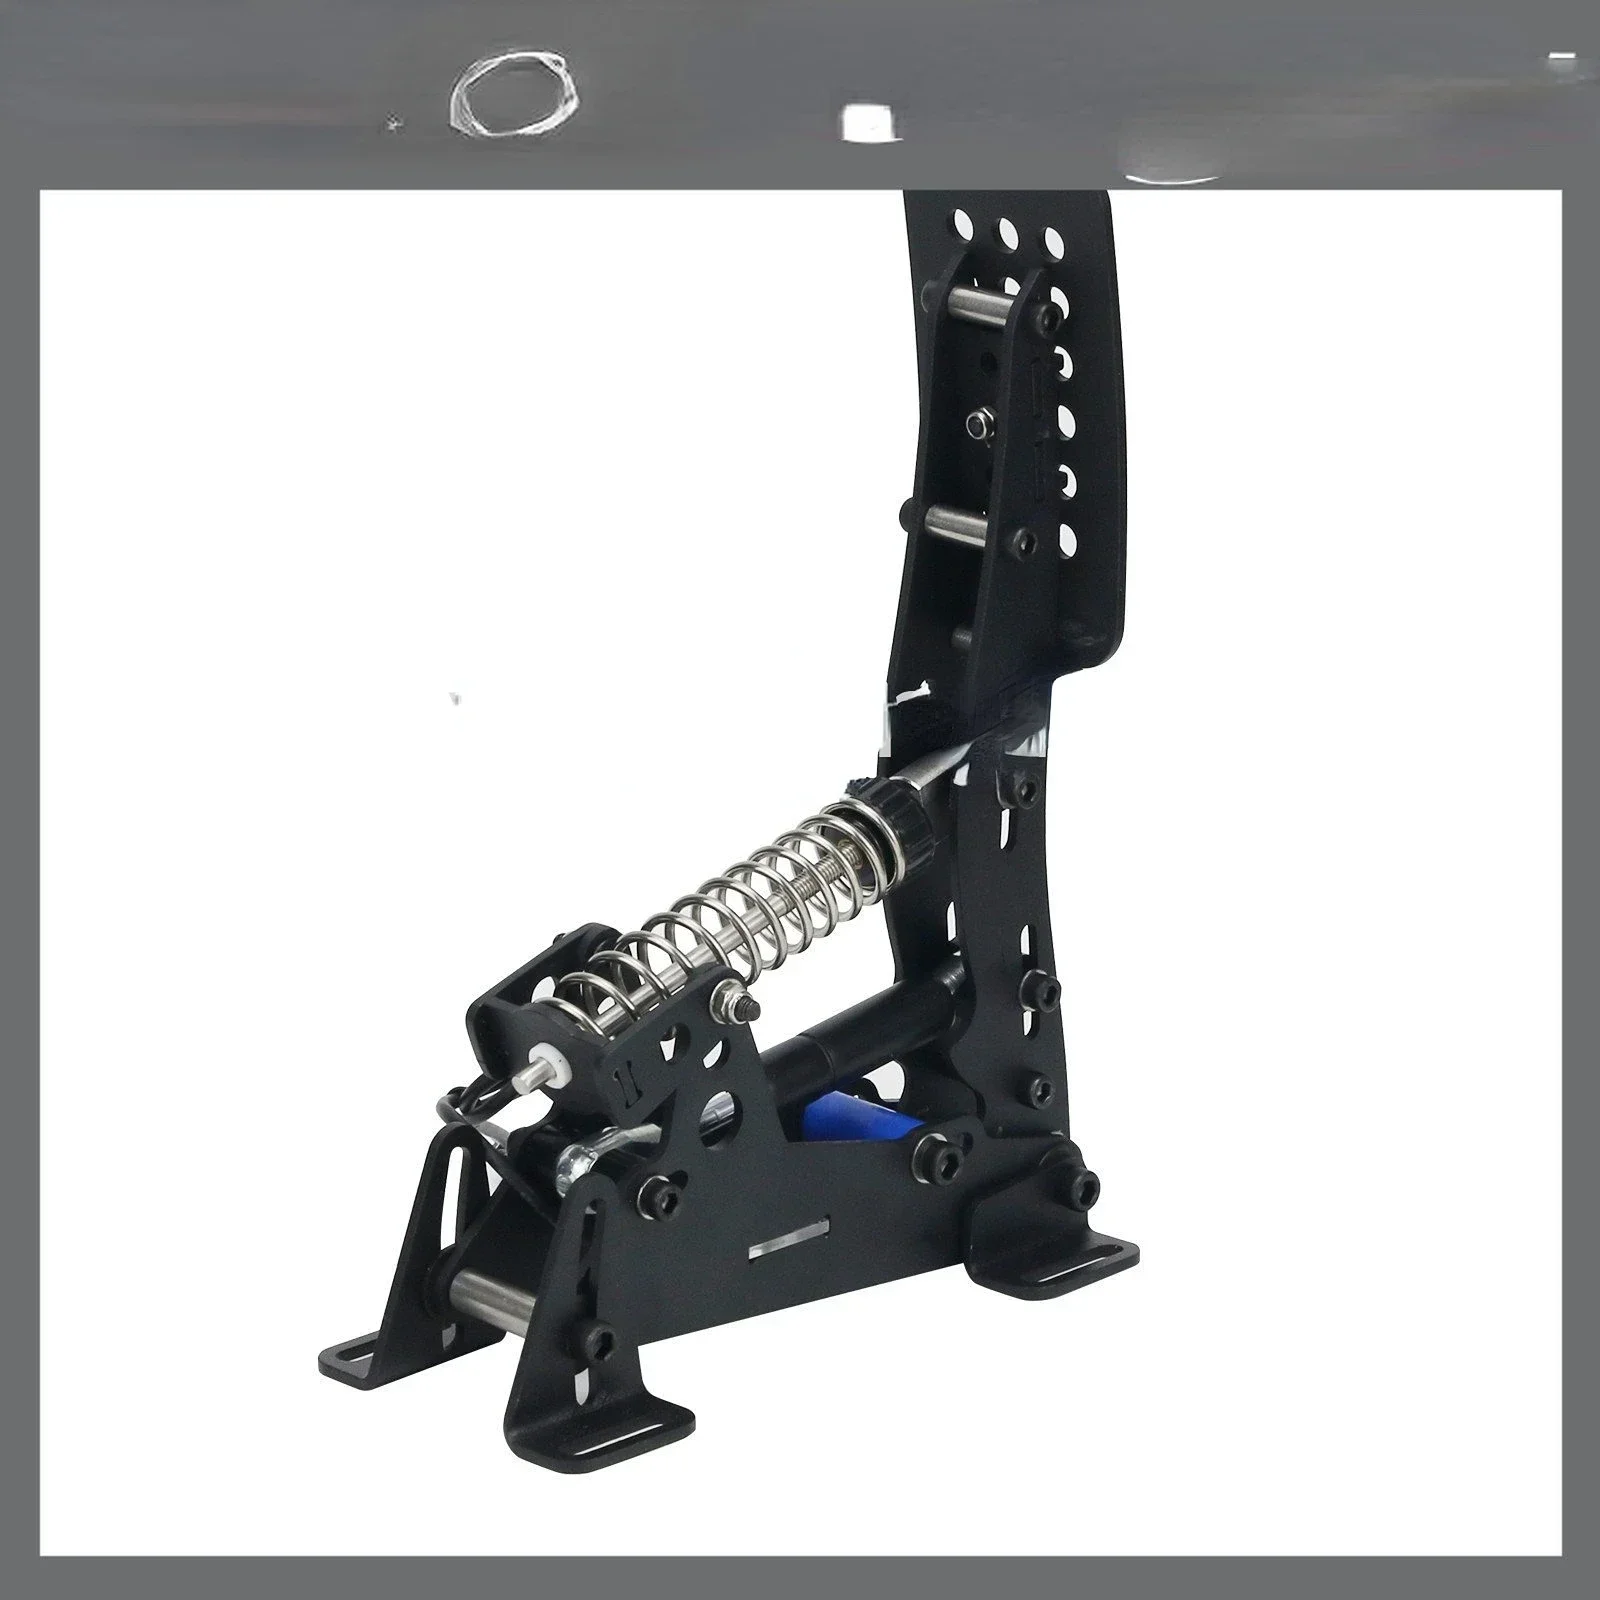 200 кг Скорость Игровой акселератор Гидравлическая педаль сцепления Педальное устройство гоночного симулятора ПК с прямым приводом